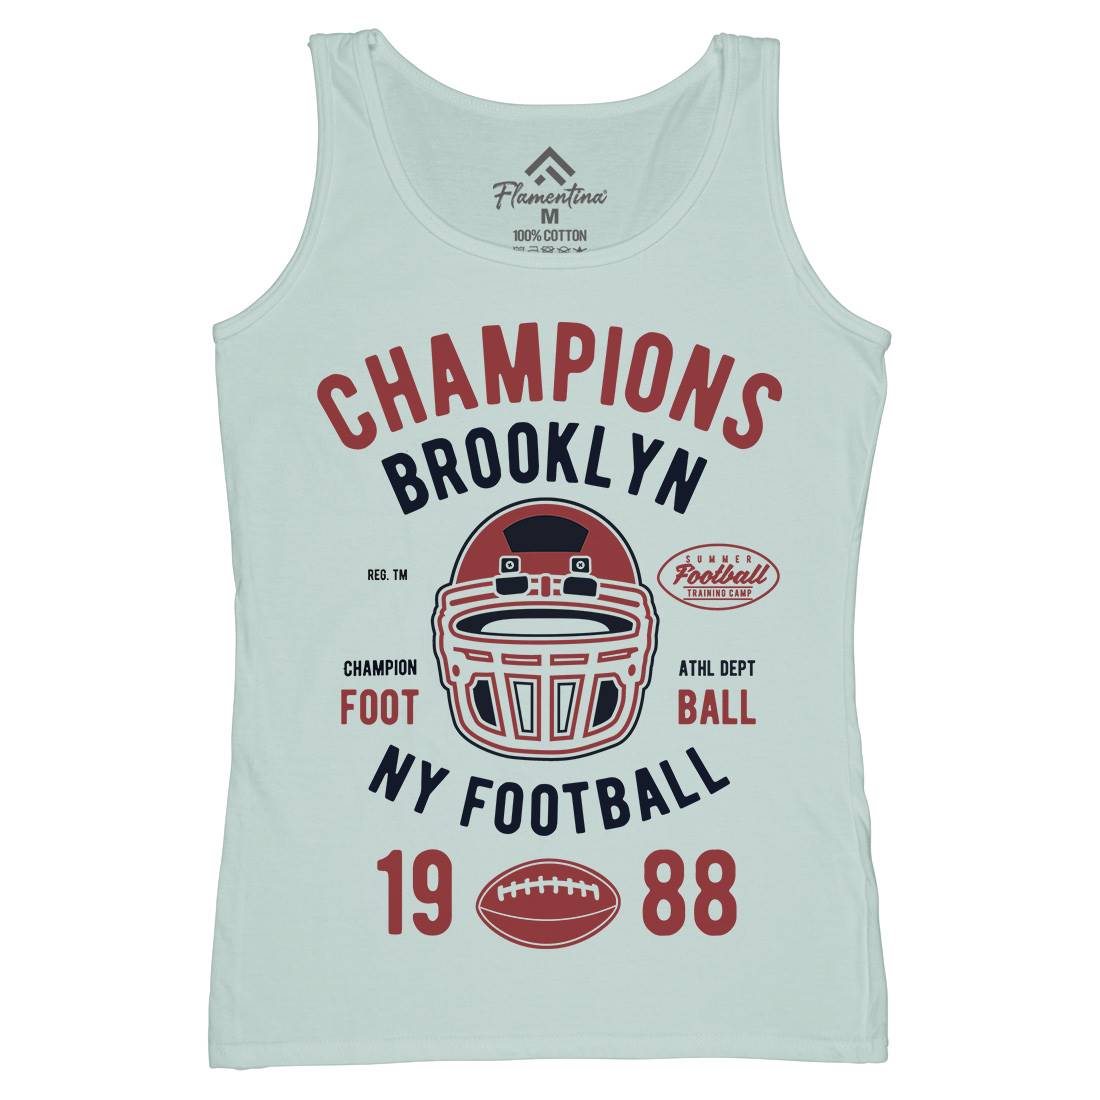 Champion Brooklyn Football Womens Organic Tank Top Vest Sport B394